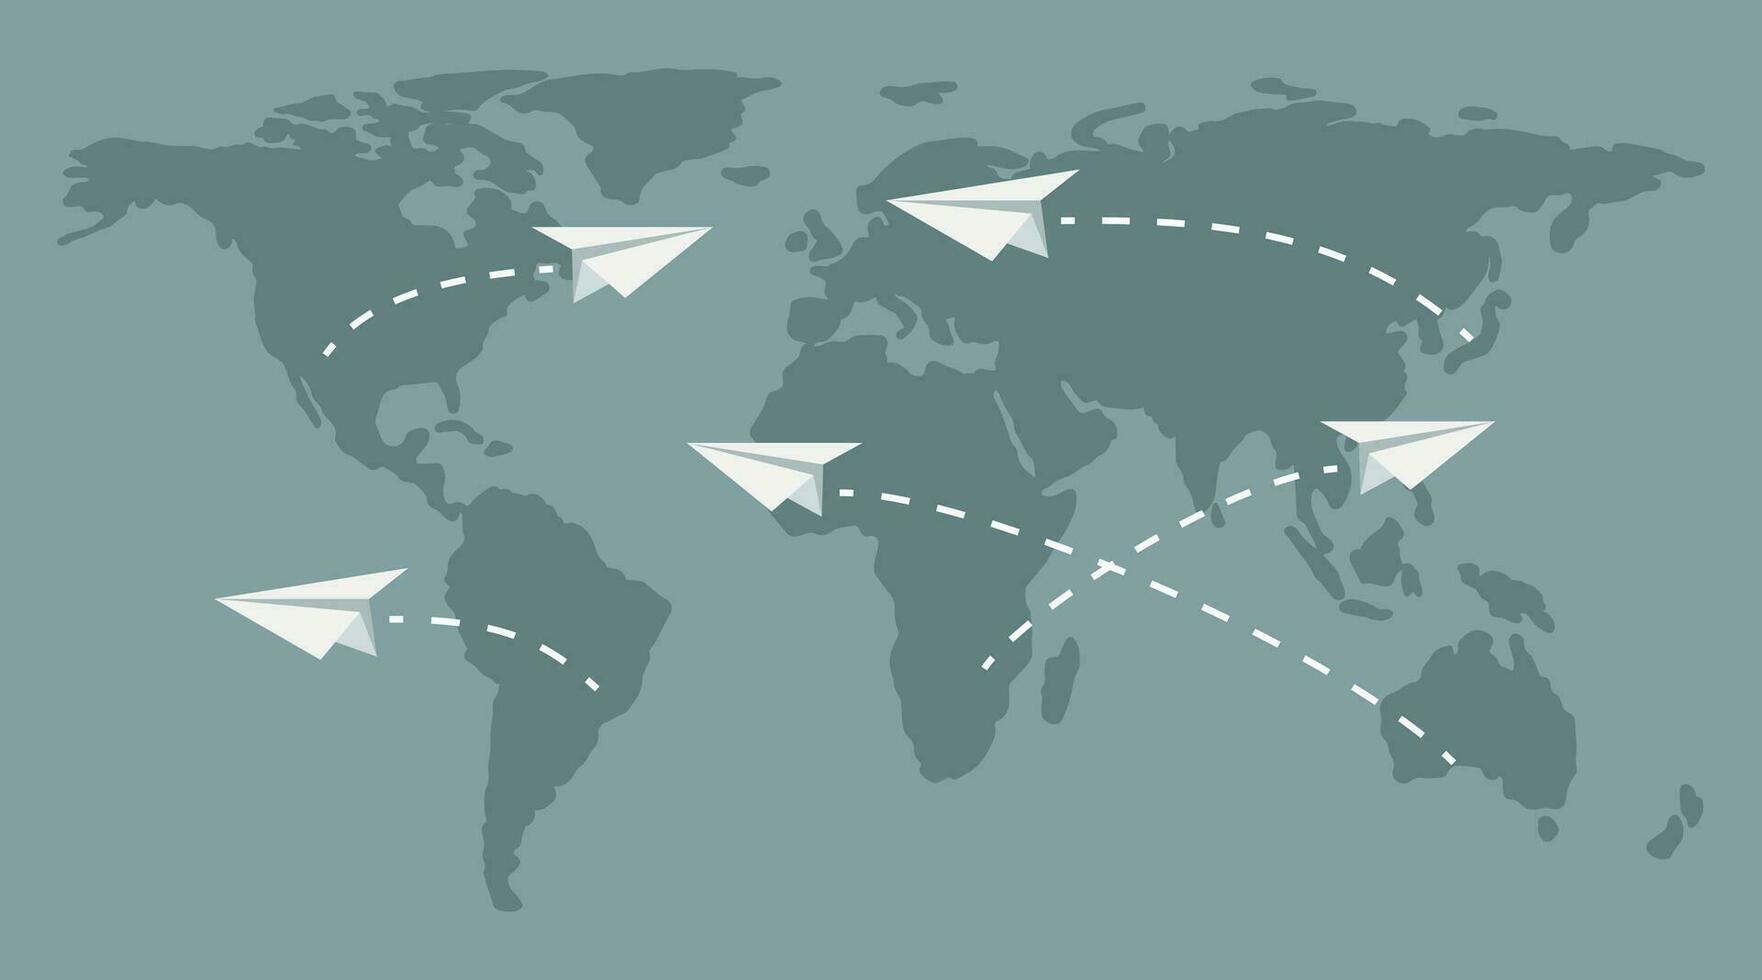 viaje concepto. un sencillo mapa de el mundo con volador papel aviones vector plano ilustración.